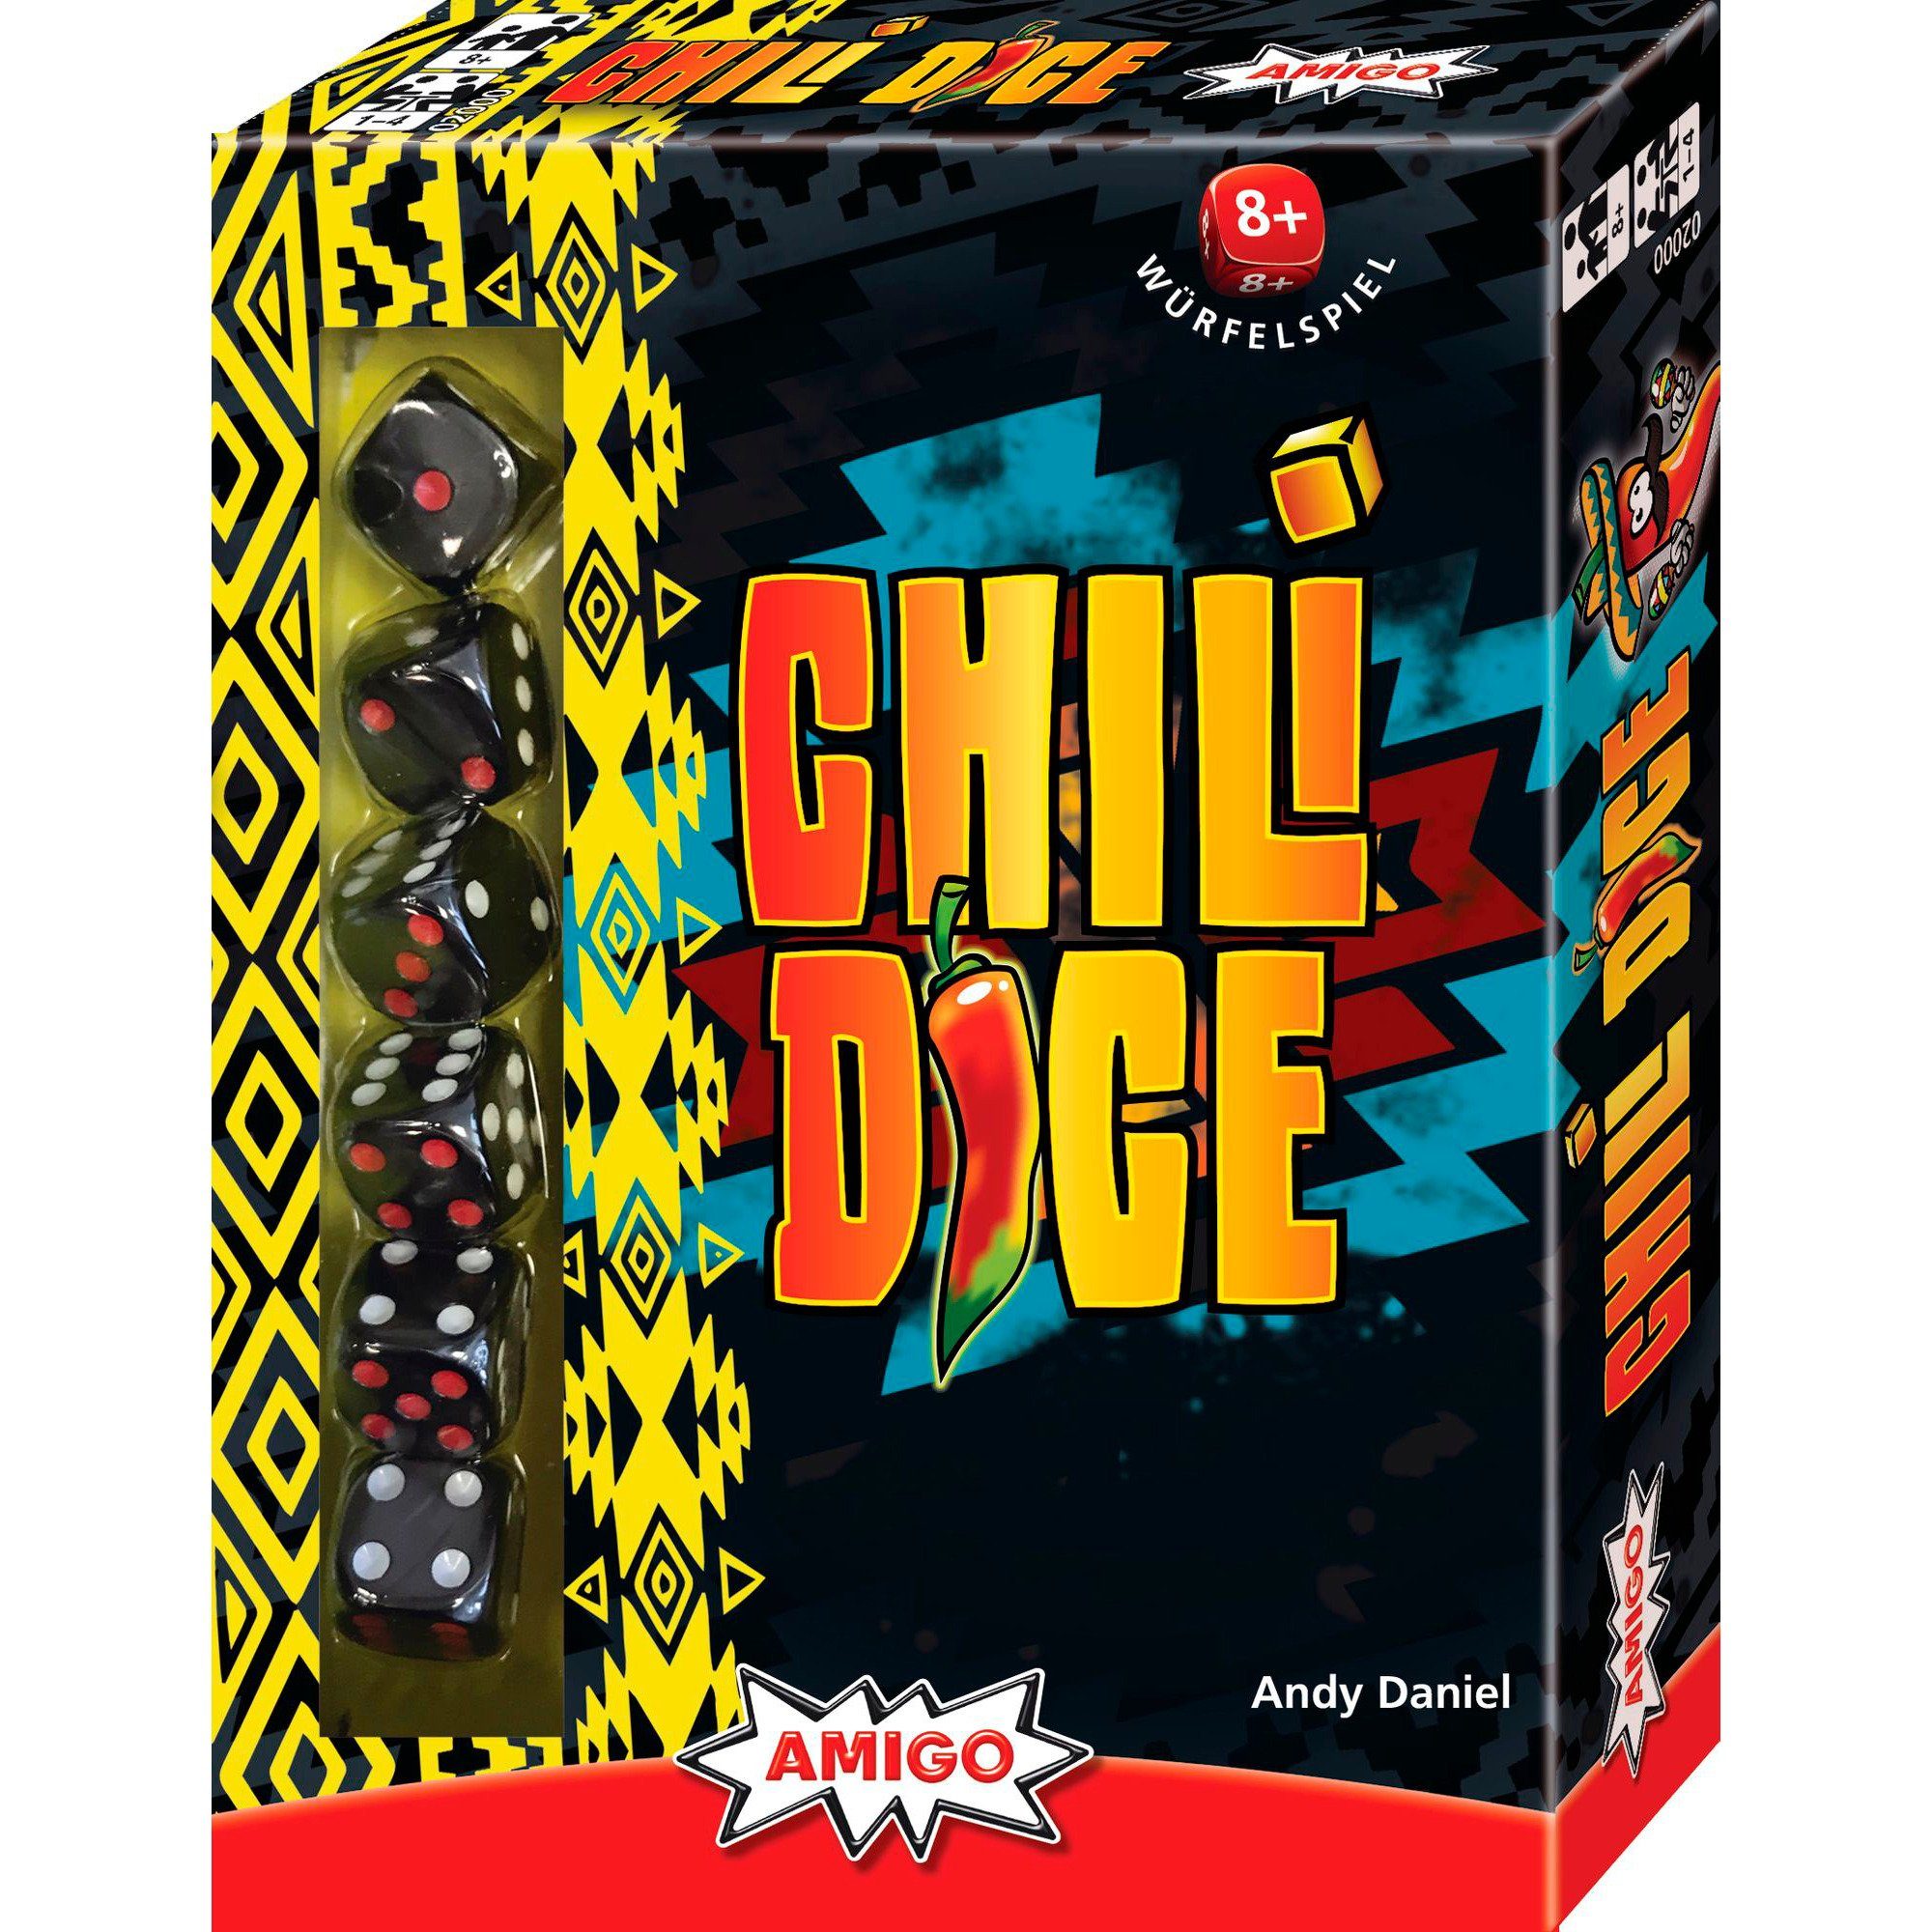 Amigo Dice, AMIGO Würfelspiel Spiel, Chili